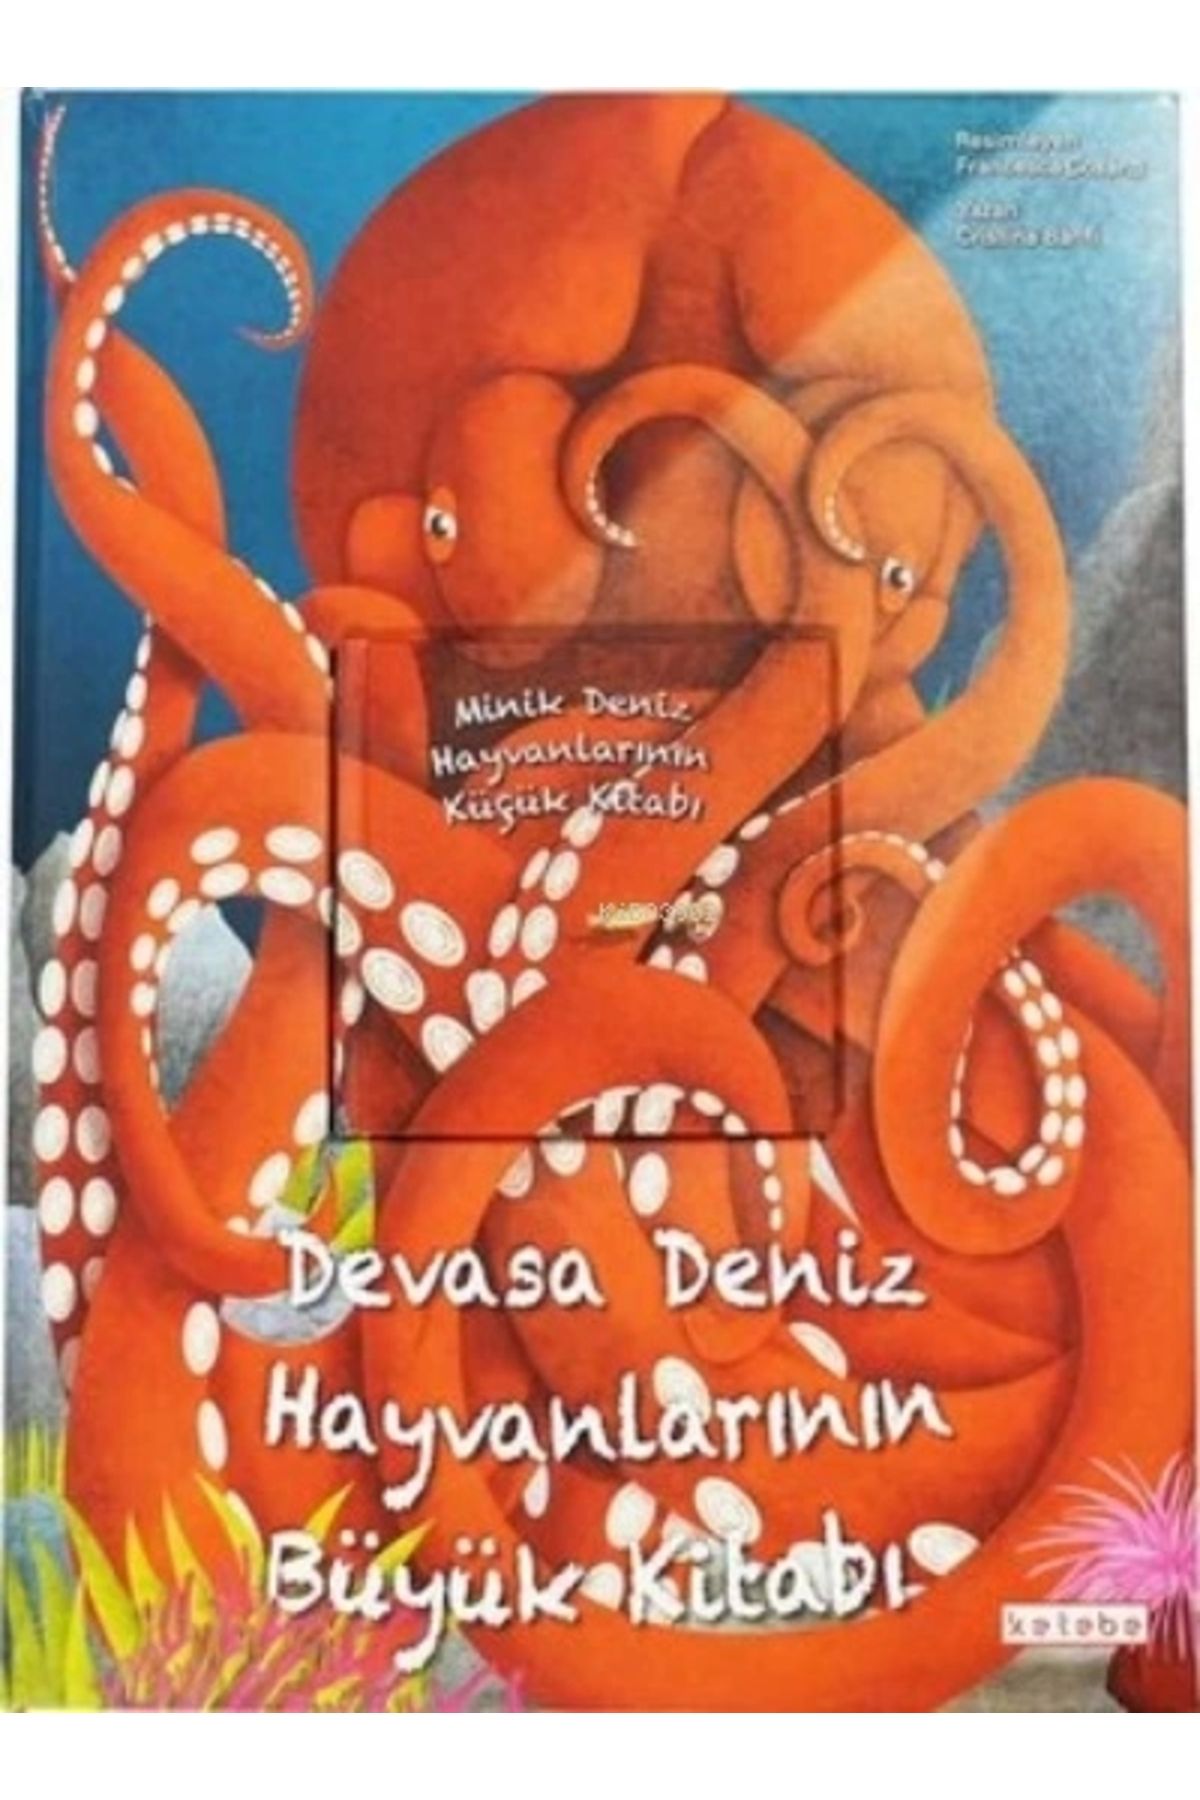 Ketebe Yayınları Devasa Deniz Hayvanlarının Büyük Kitabı & Minik Deniz Hayvanlarının Küçük Kitabı